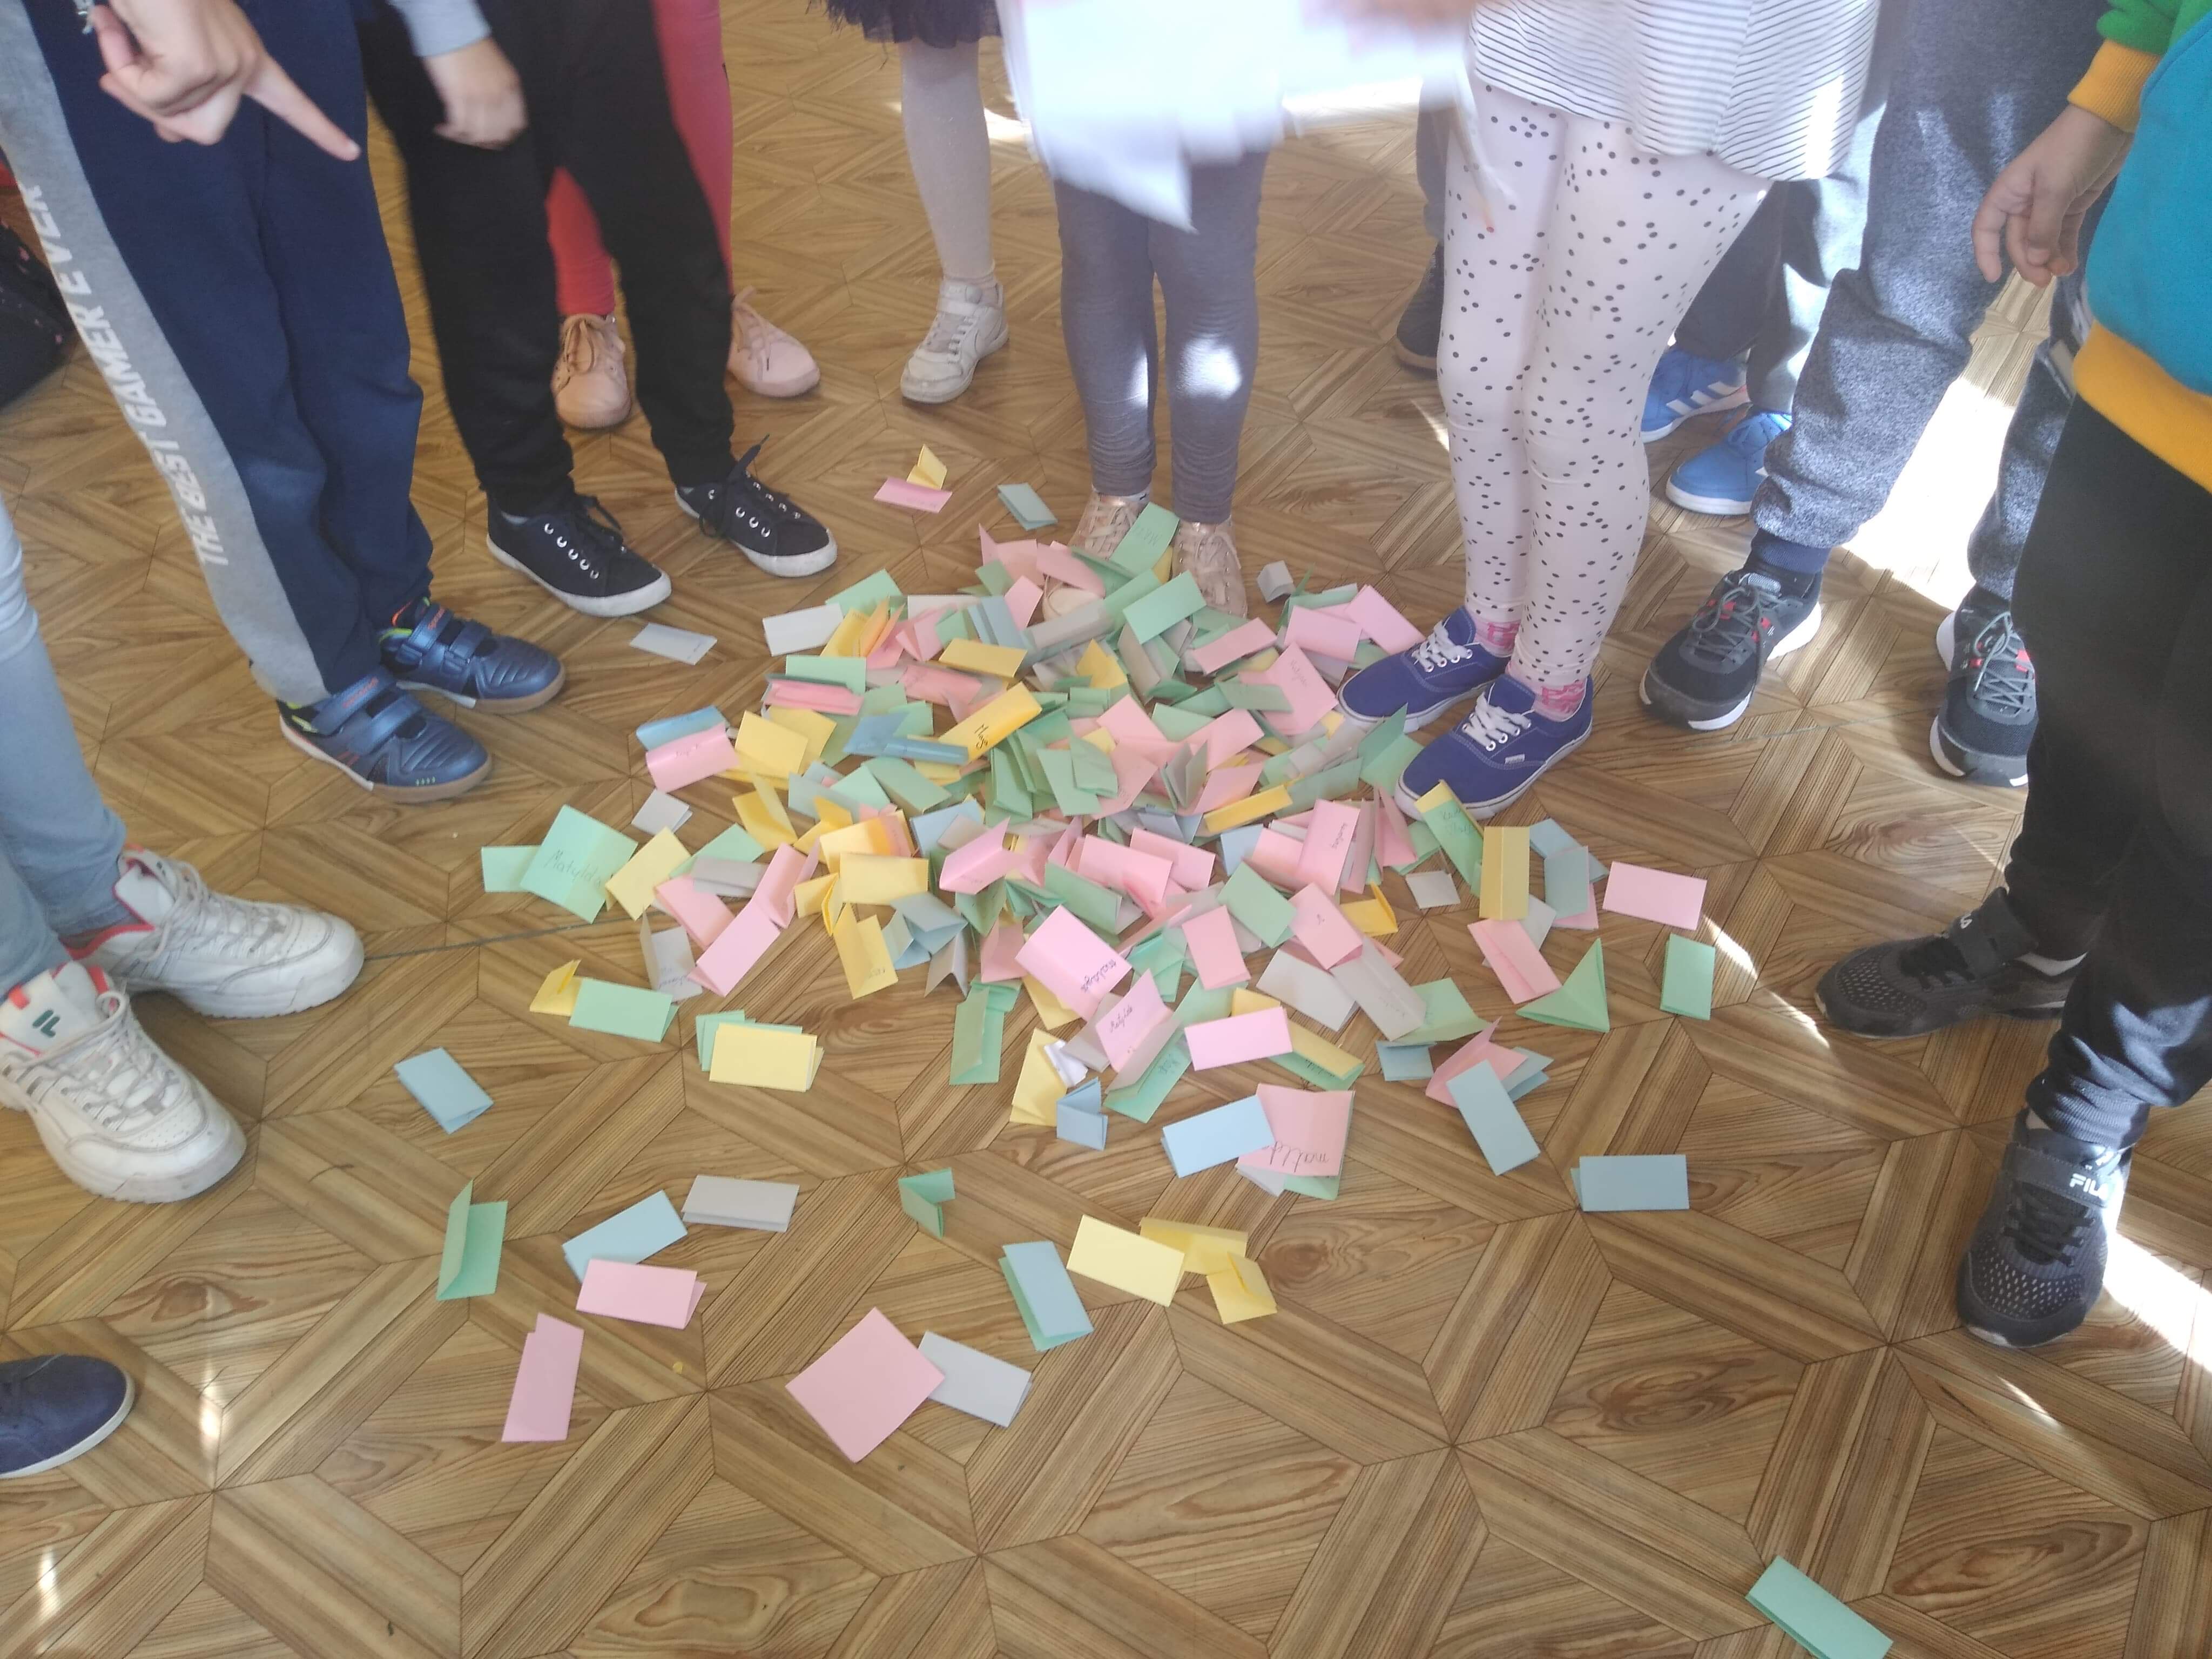 Dzieci stoją a na podłodze wysypane są kraty do głosowania na samorząd uczniowski